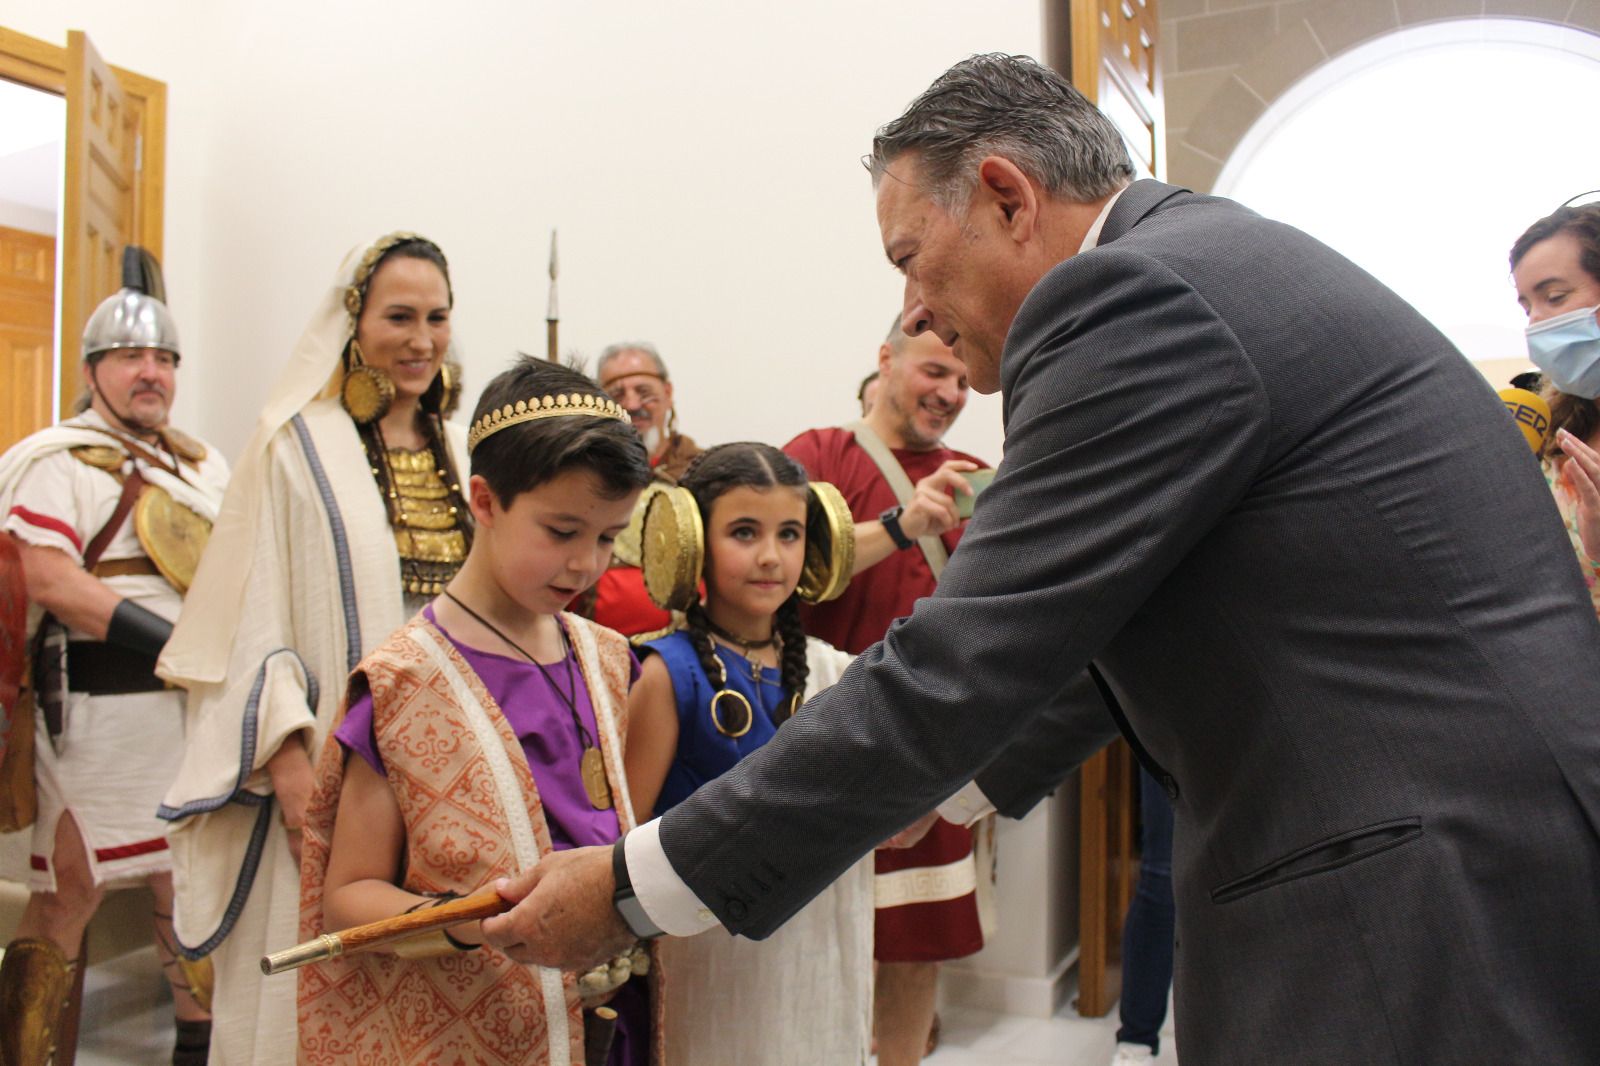 Raúl Caro-Accino entrega el bastón de mando de la ciudad a un niño en las pasadas fiestas íbero-romanas de Cástulo